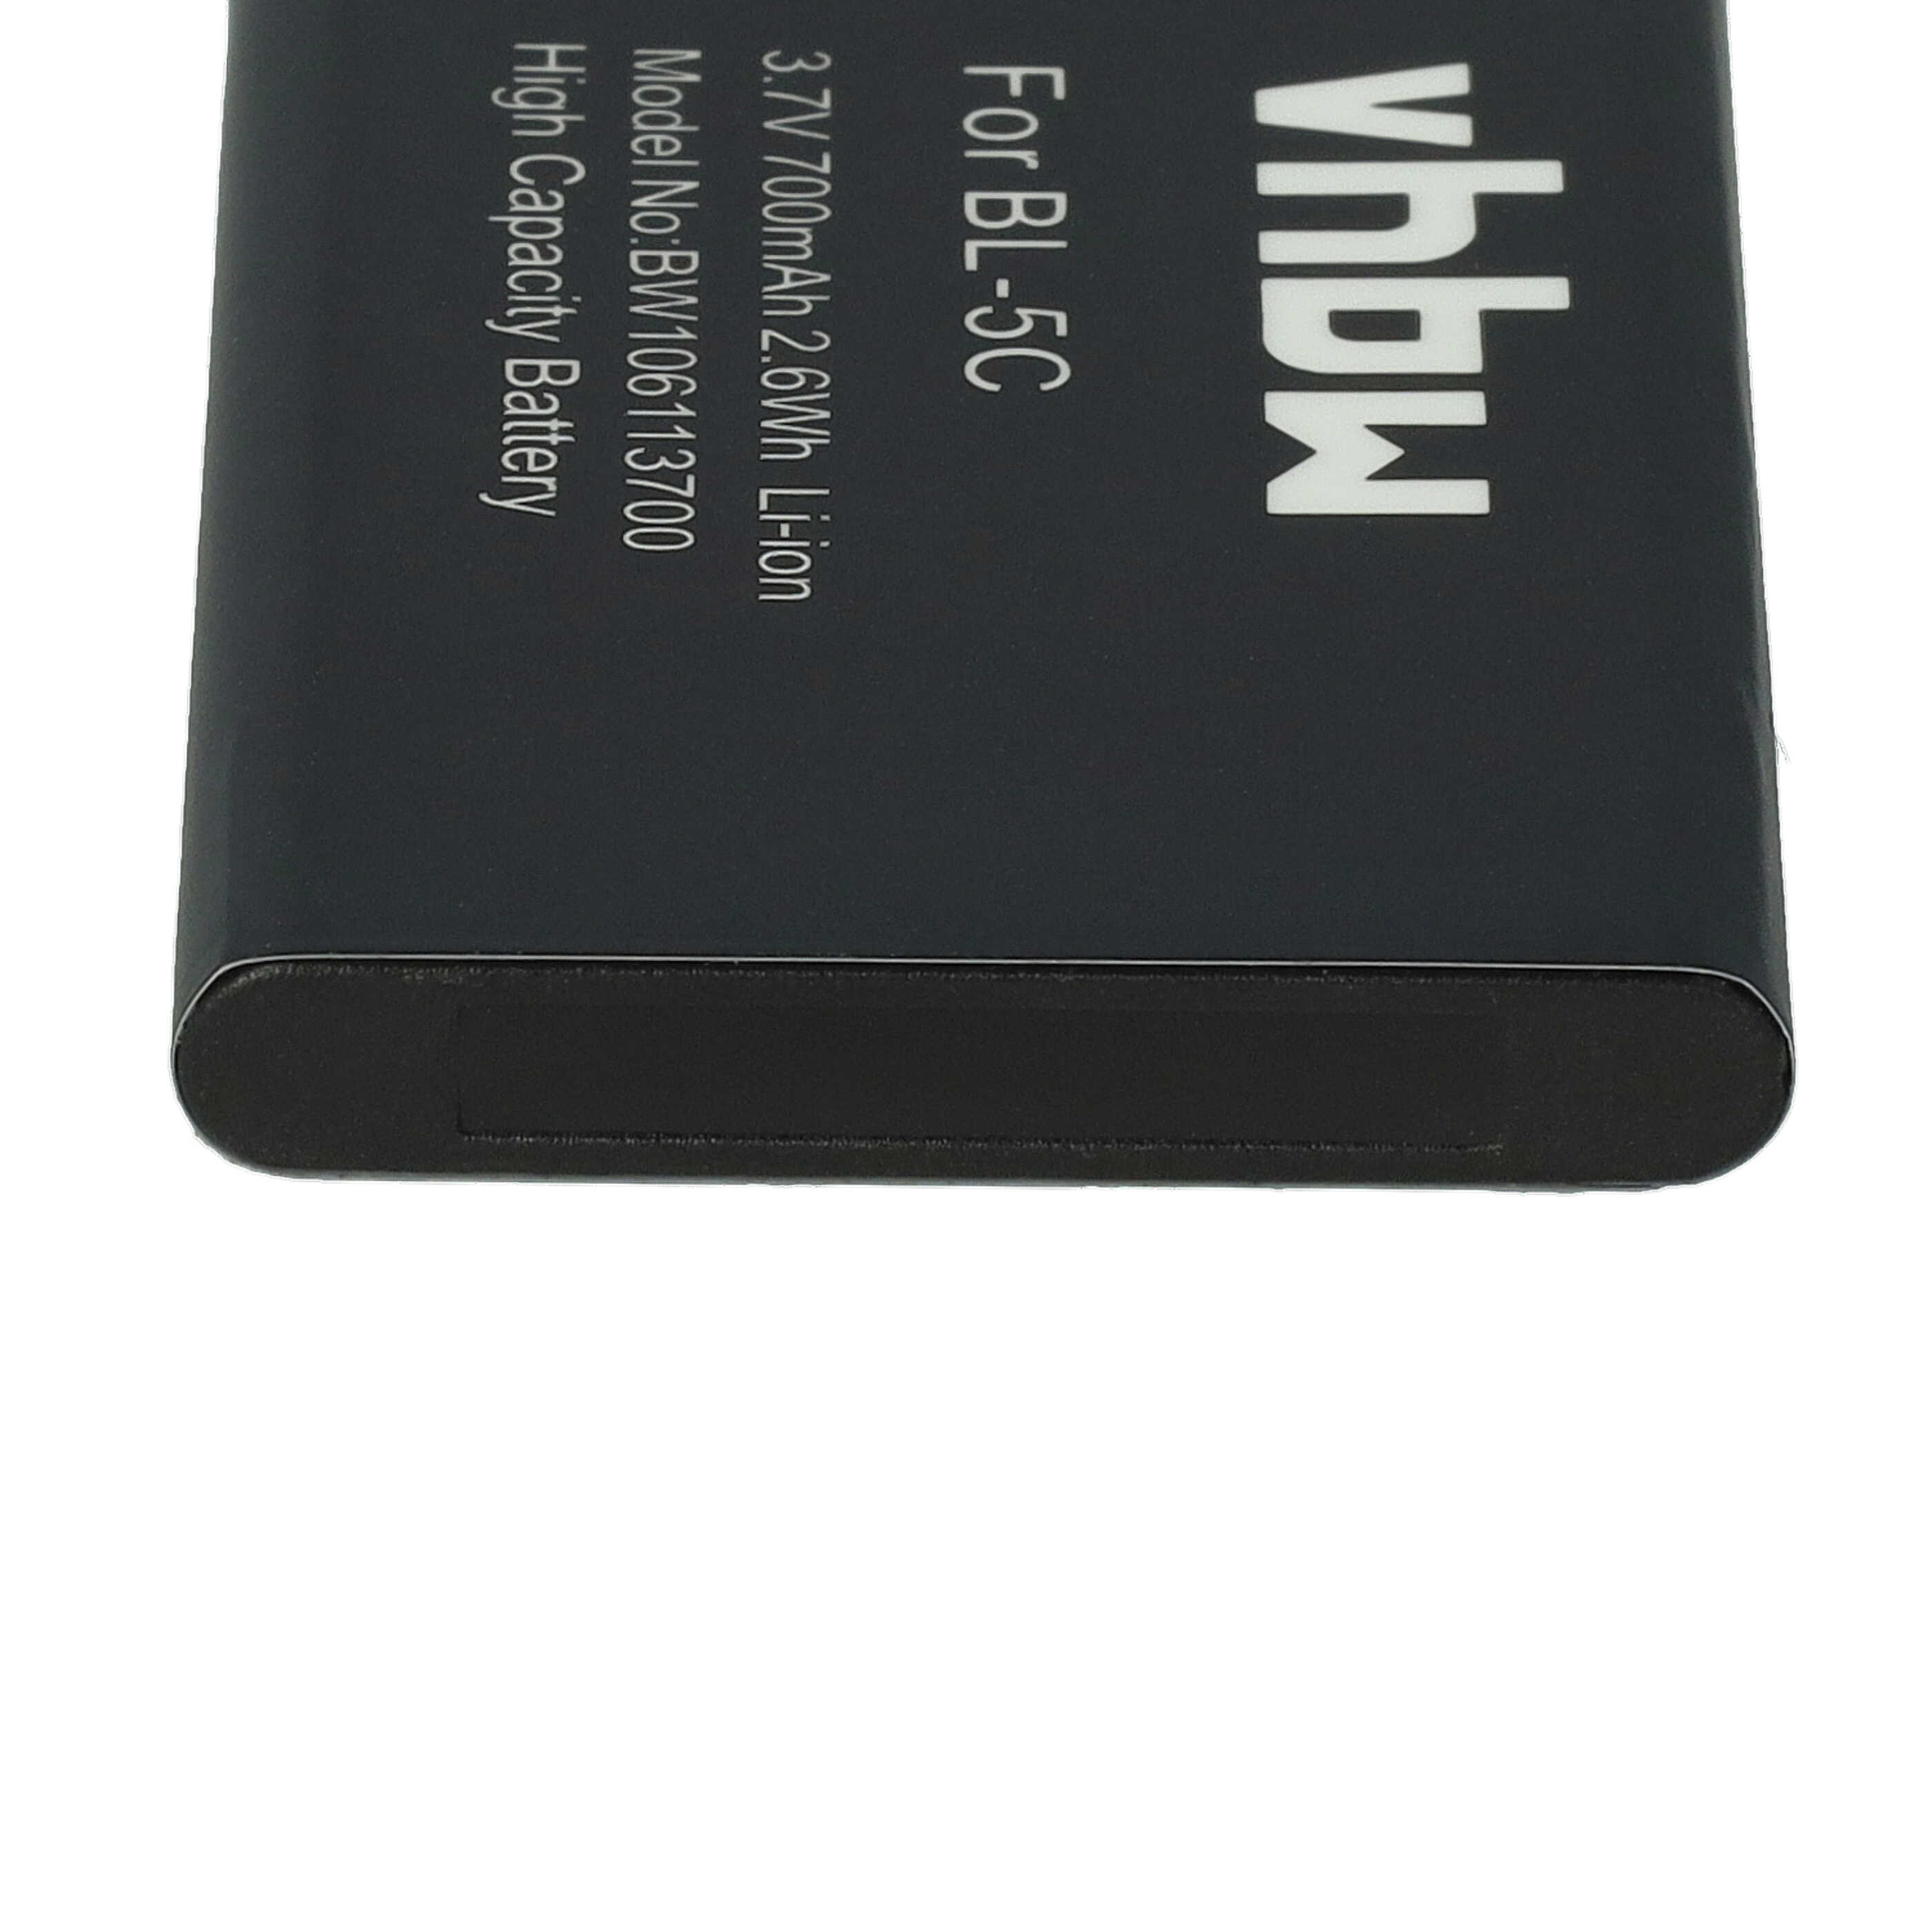 Batterie remplace Aiptek 055 pour caméscope - 700mAh 3,7V Li-ion